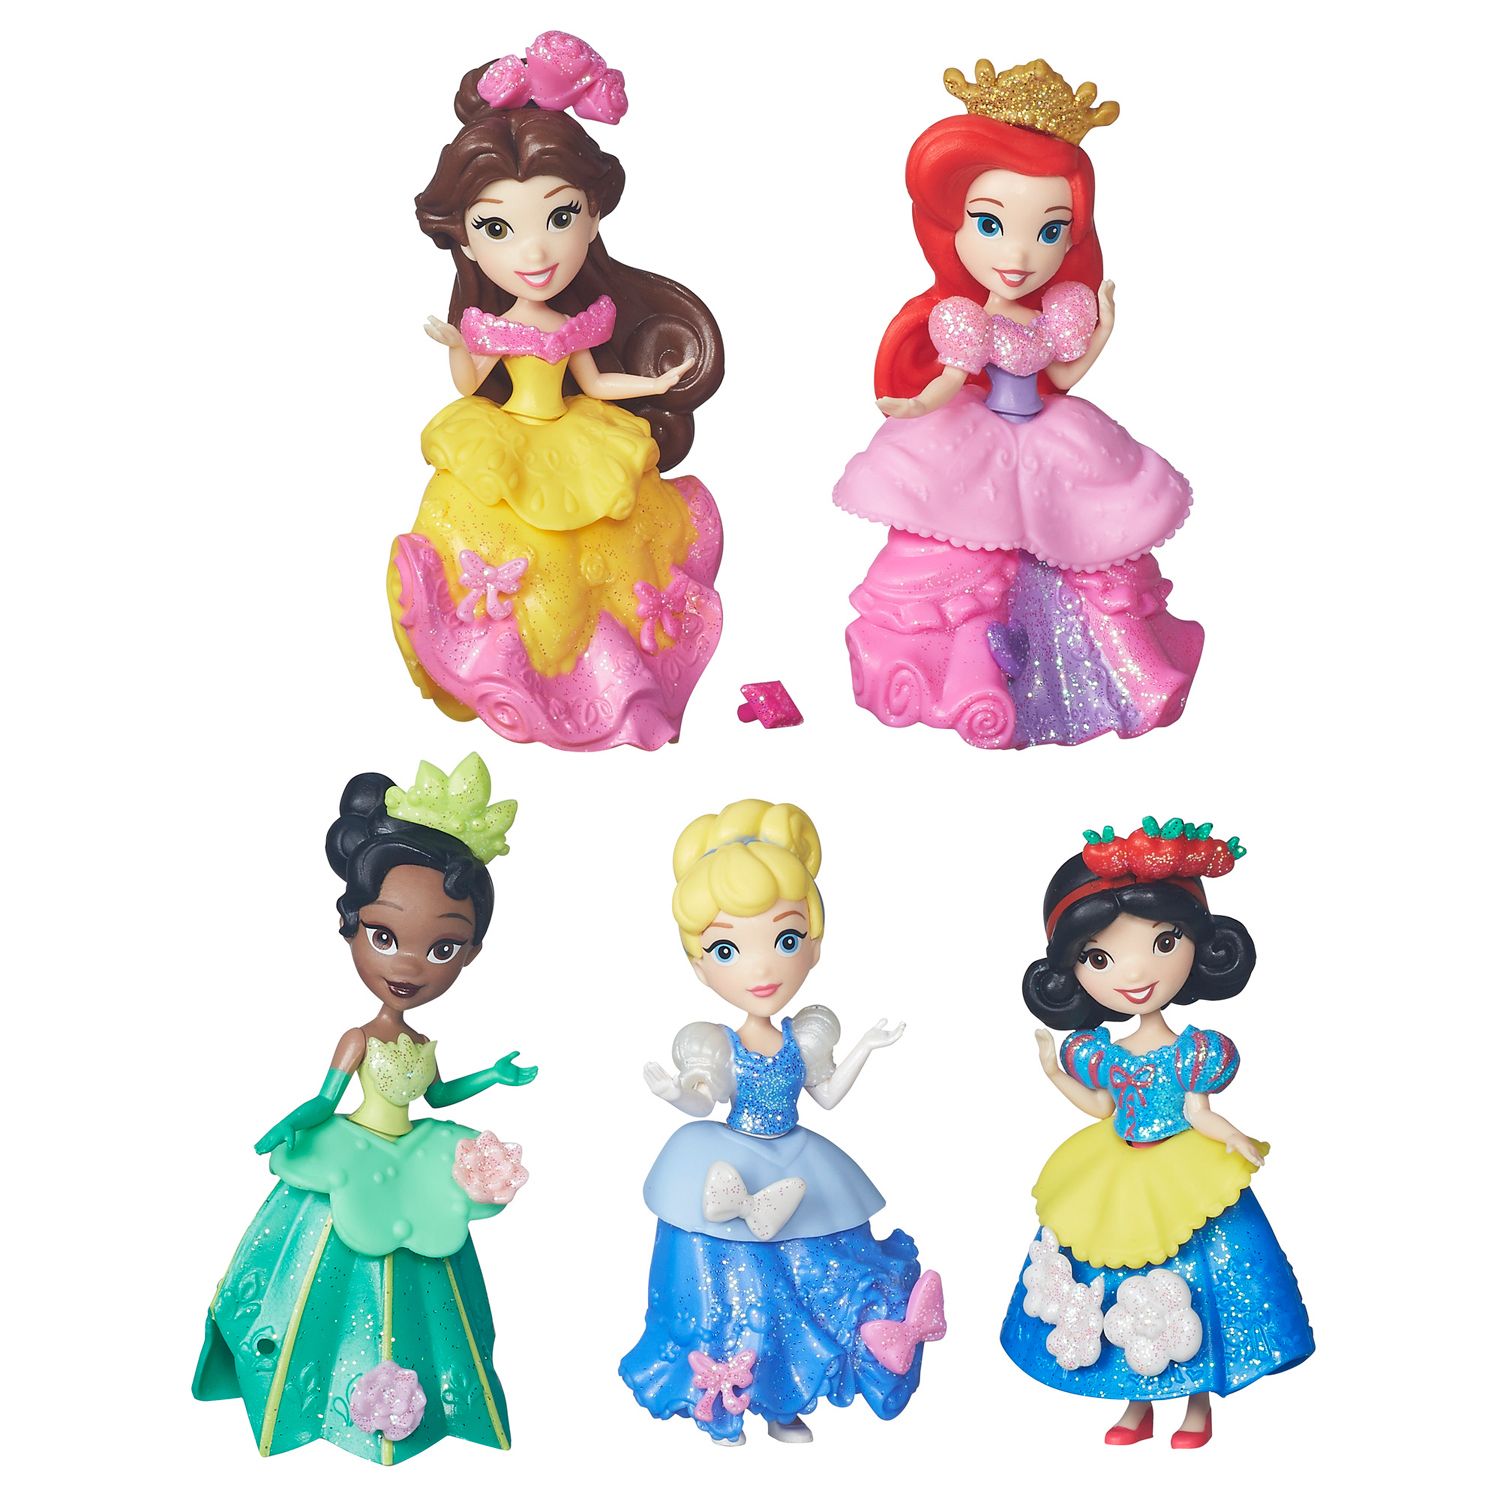 Купить принцесс дисней. Коллекция Disney Princess Hasbro. Мини куклы принцессы Дисней Белоснежка. Disney Princess Hasbro little Kingdom. Игрушка Дисней принцесс Хасбро.